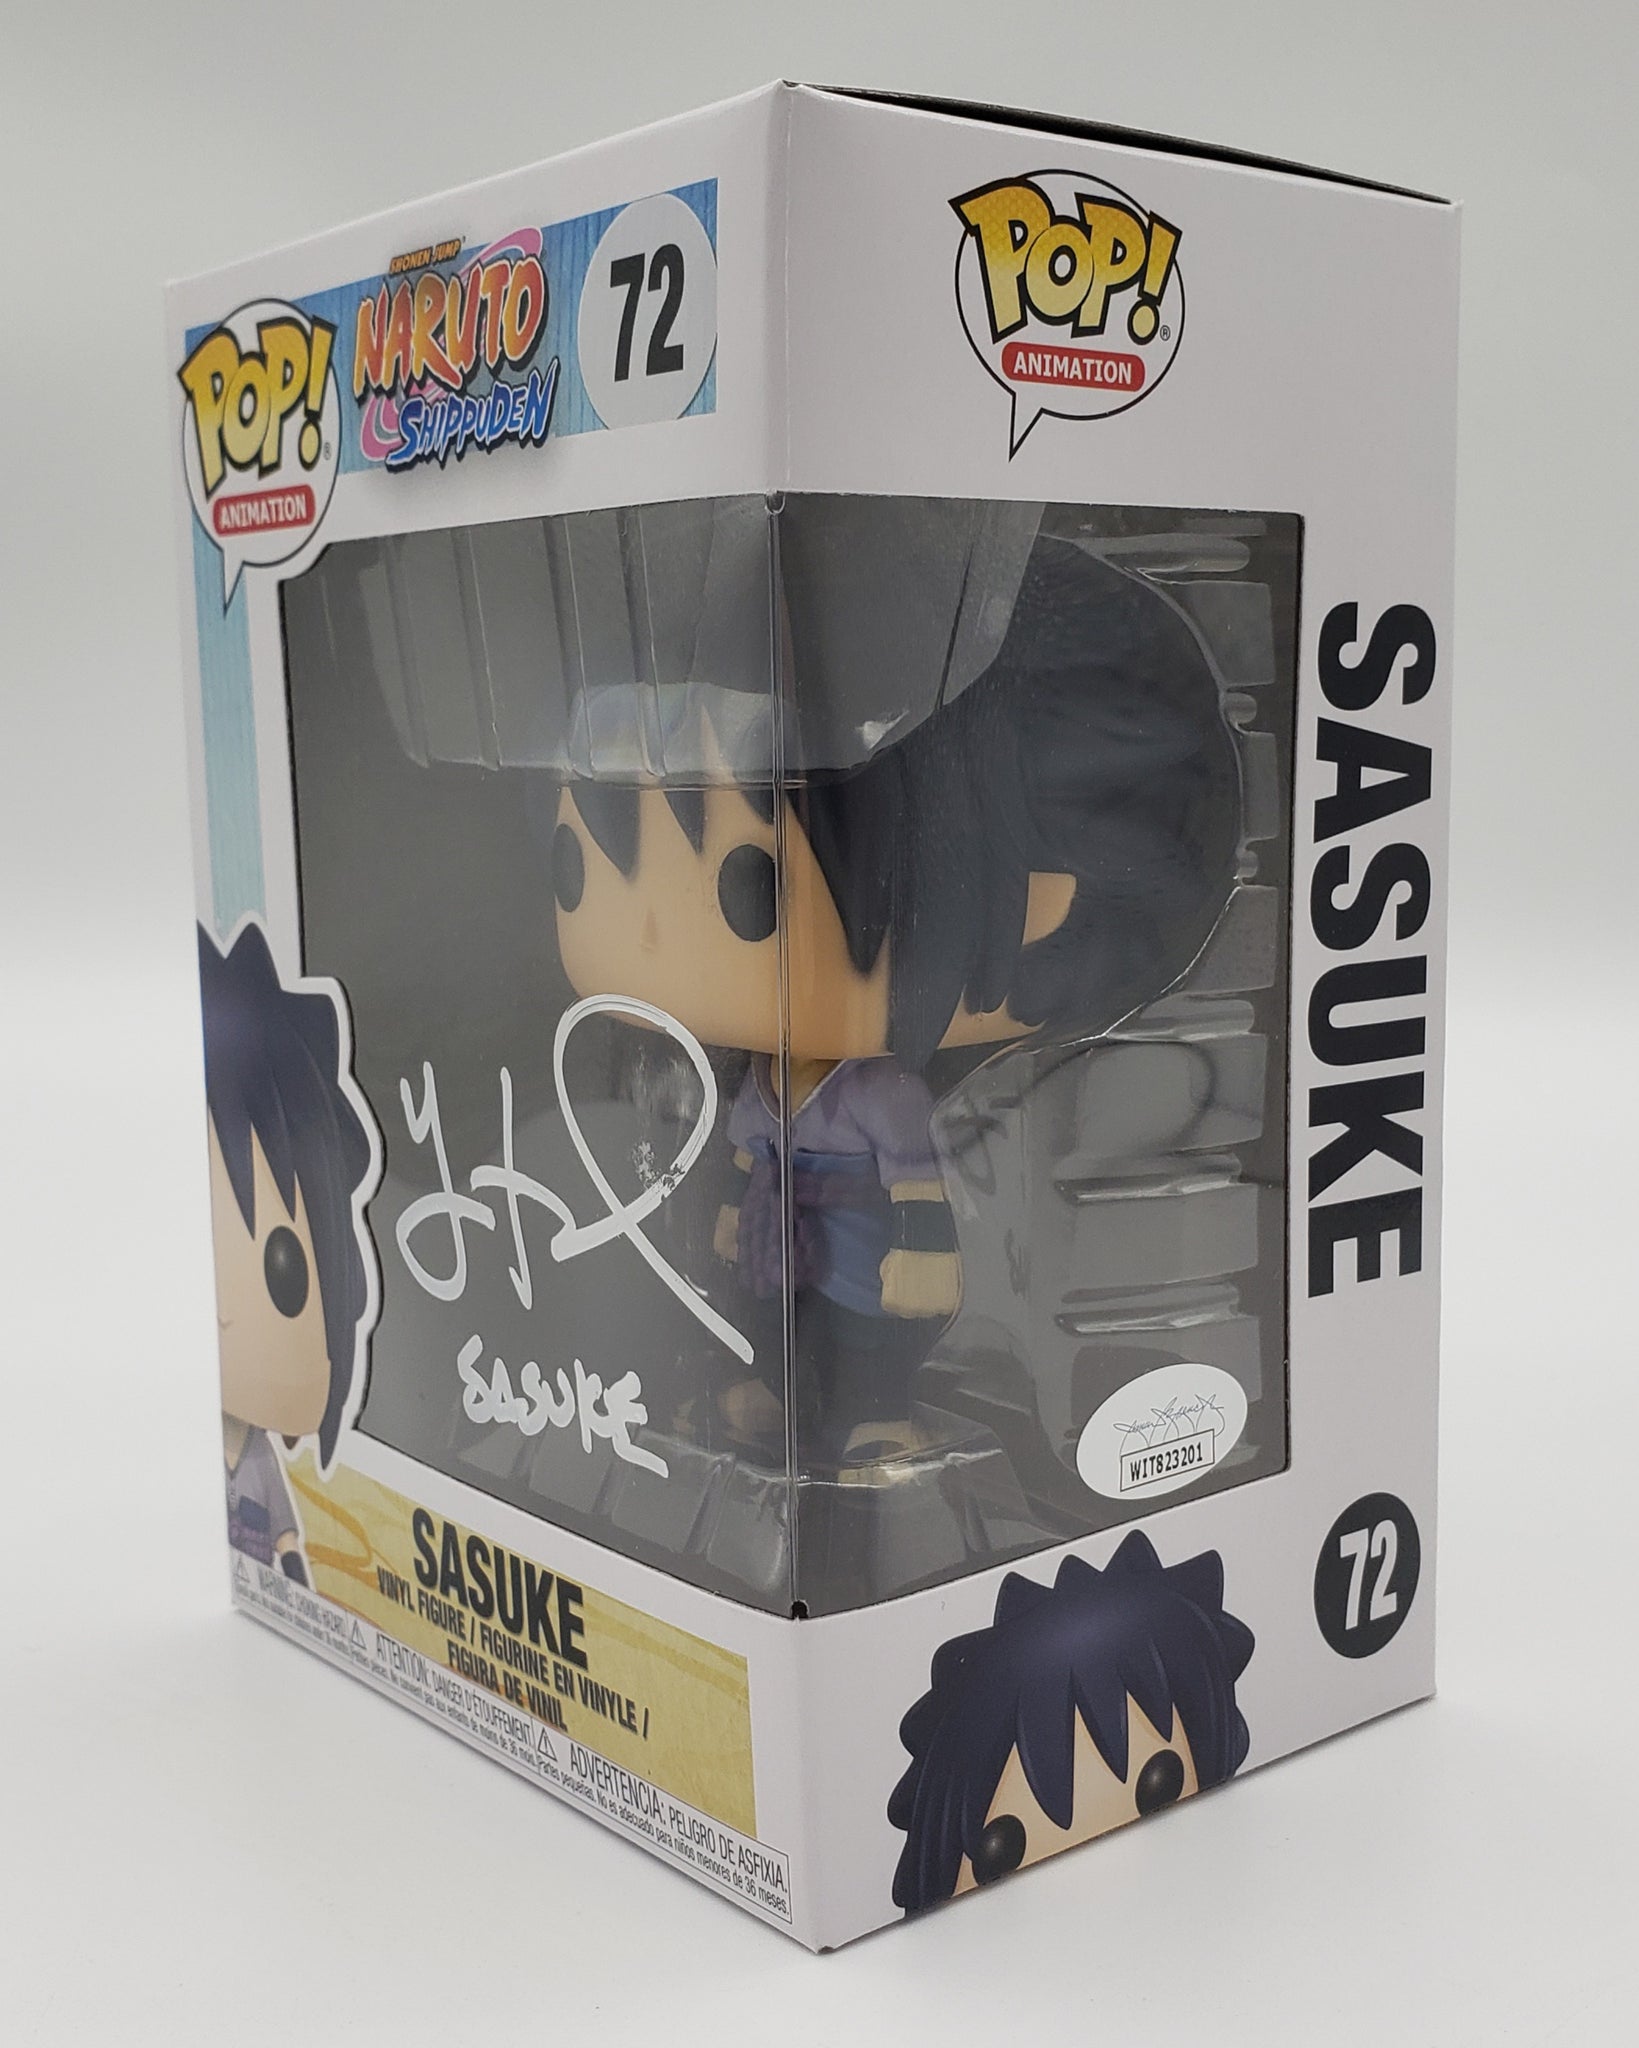 Naruto: Shippuden - Sasuke (#72) - Funko Pop! Animation Figure